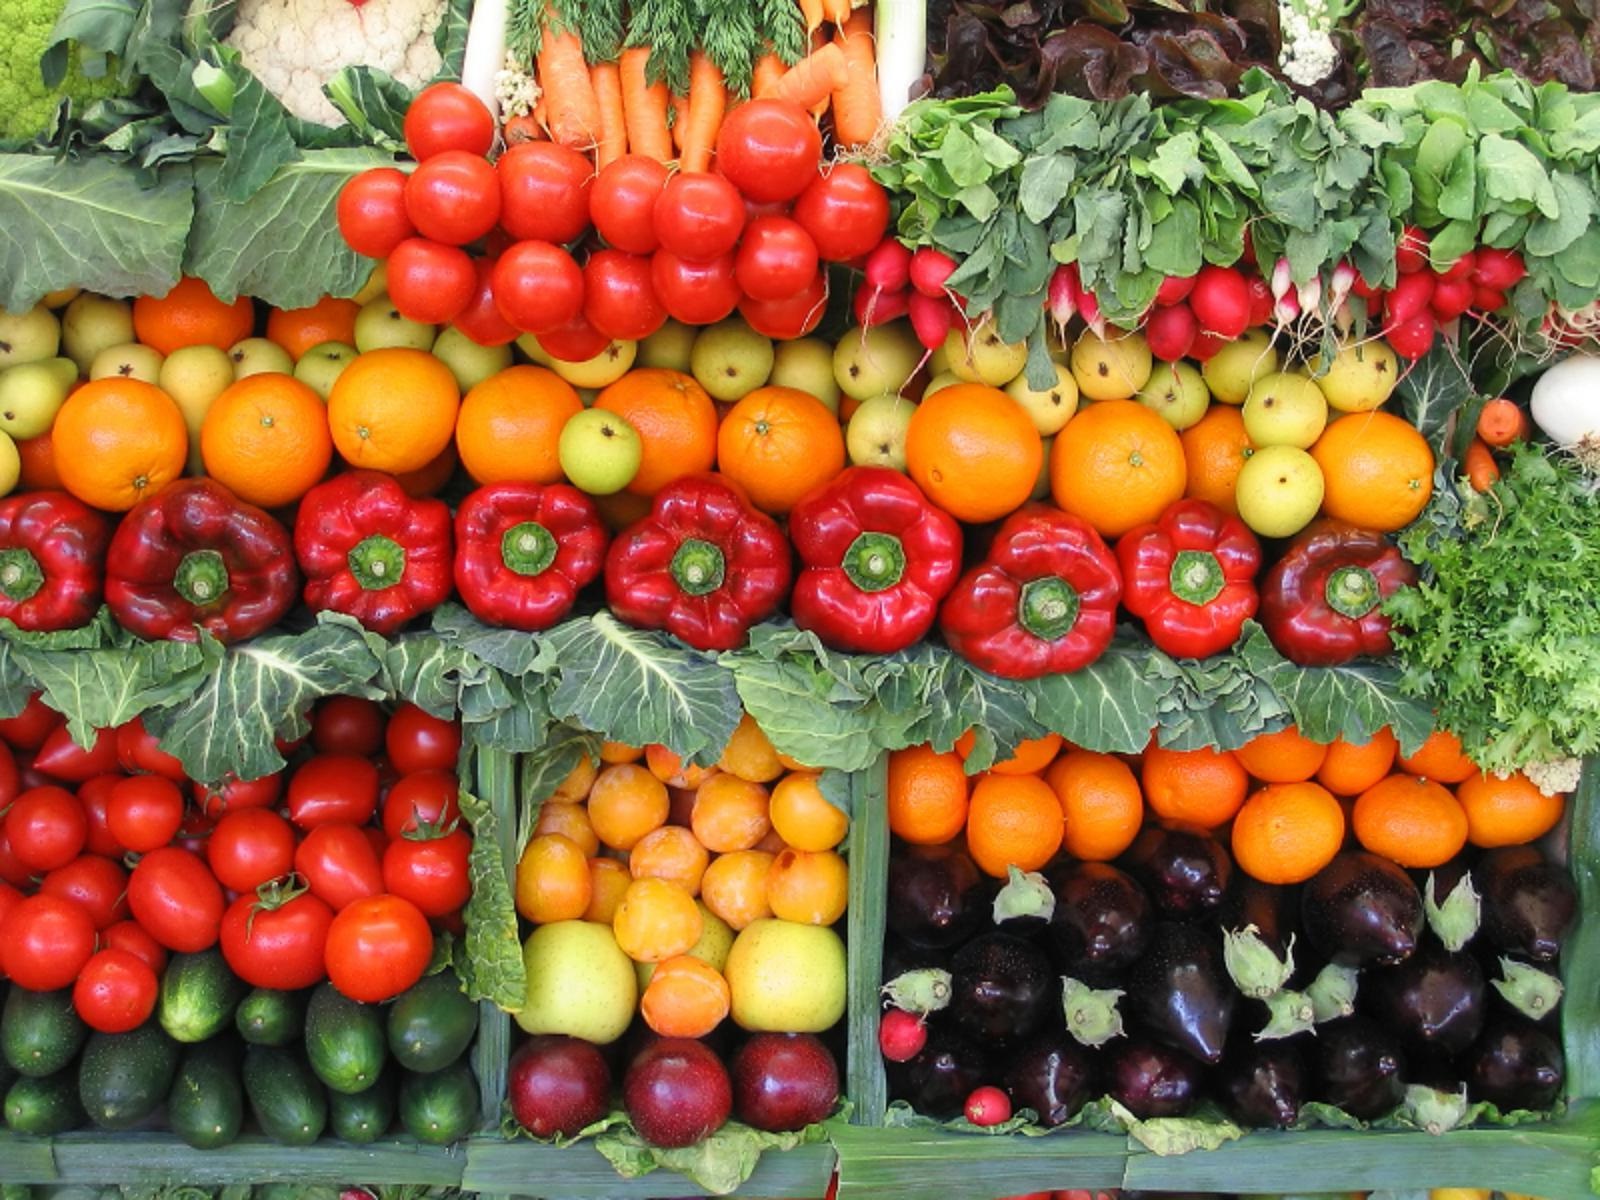 правила хранения овощей